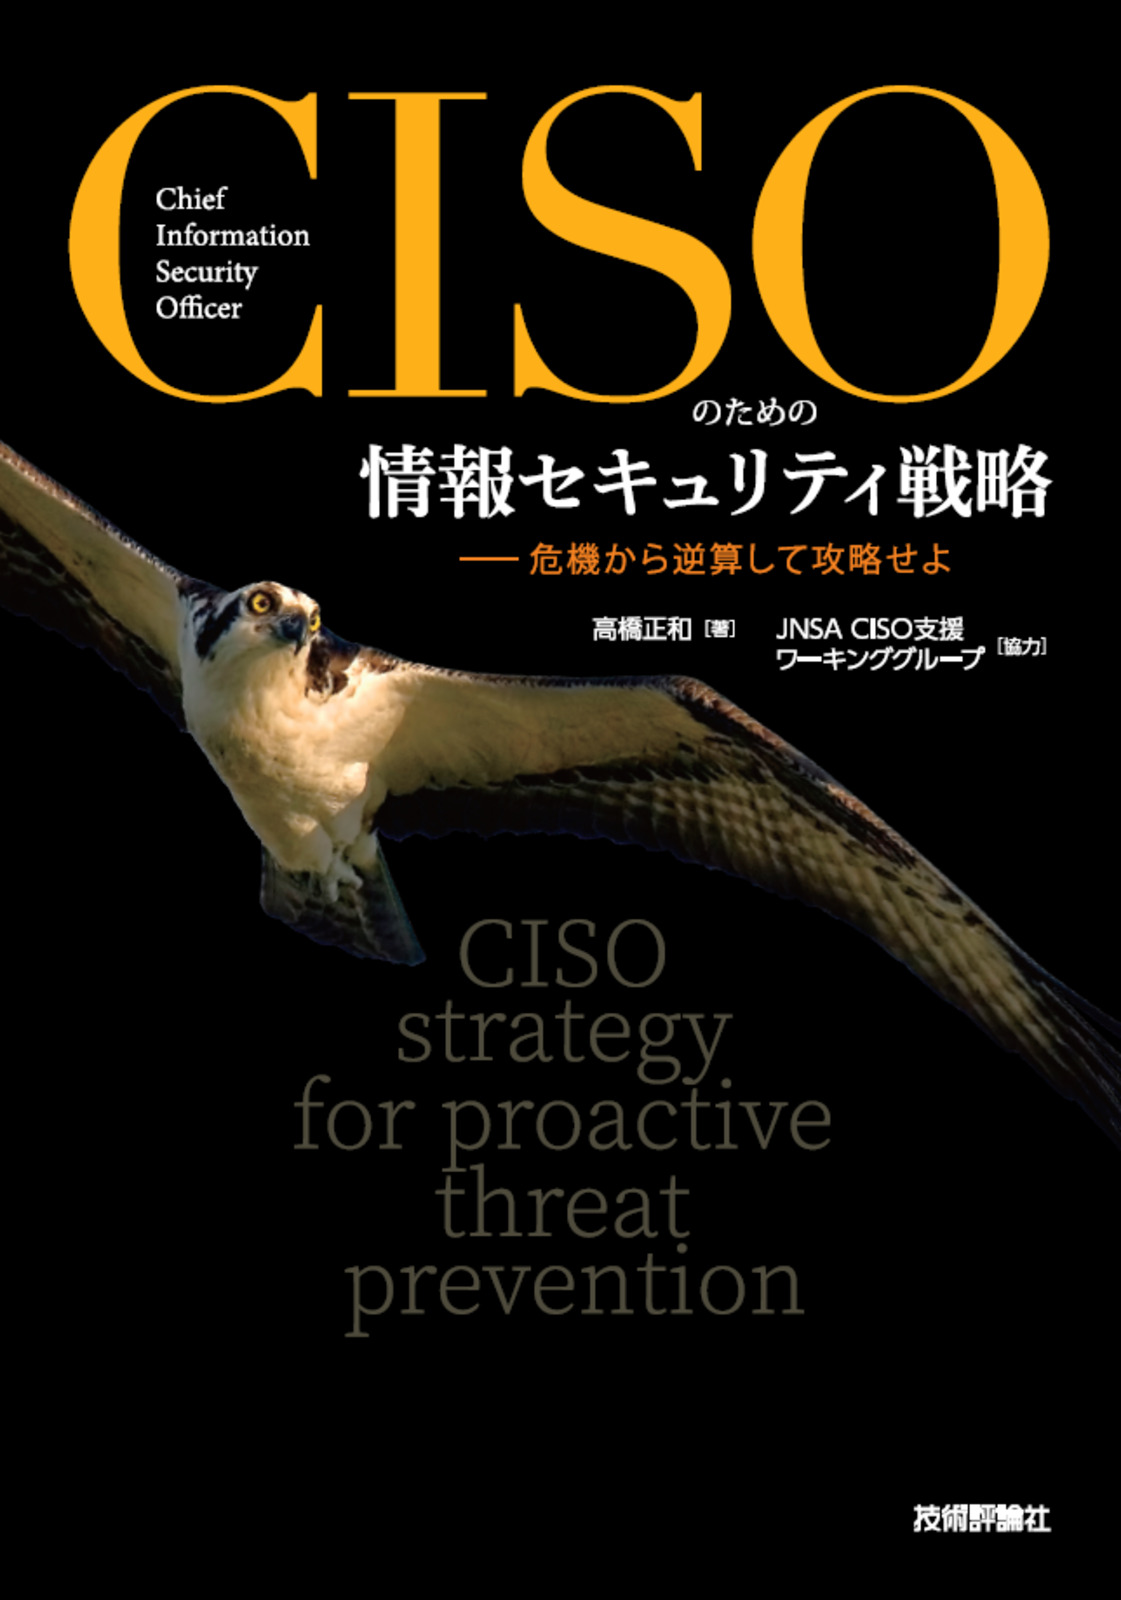 CISOのための情報セキュリティ戦略 ――危機から逆算して攻略せよ：書籍 